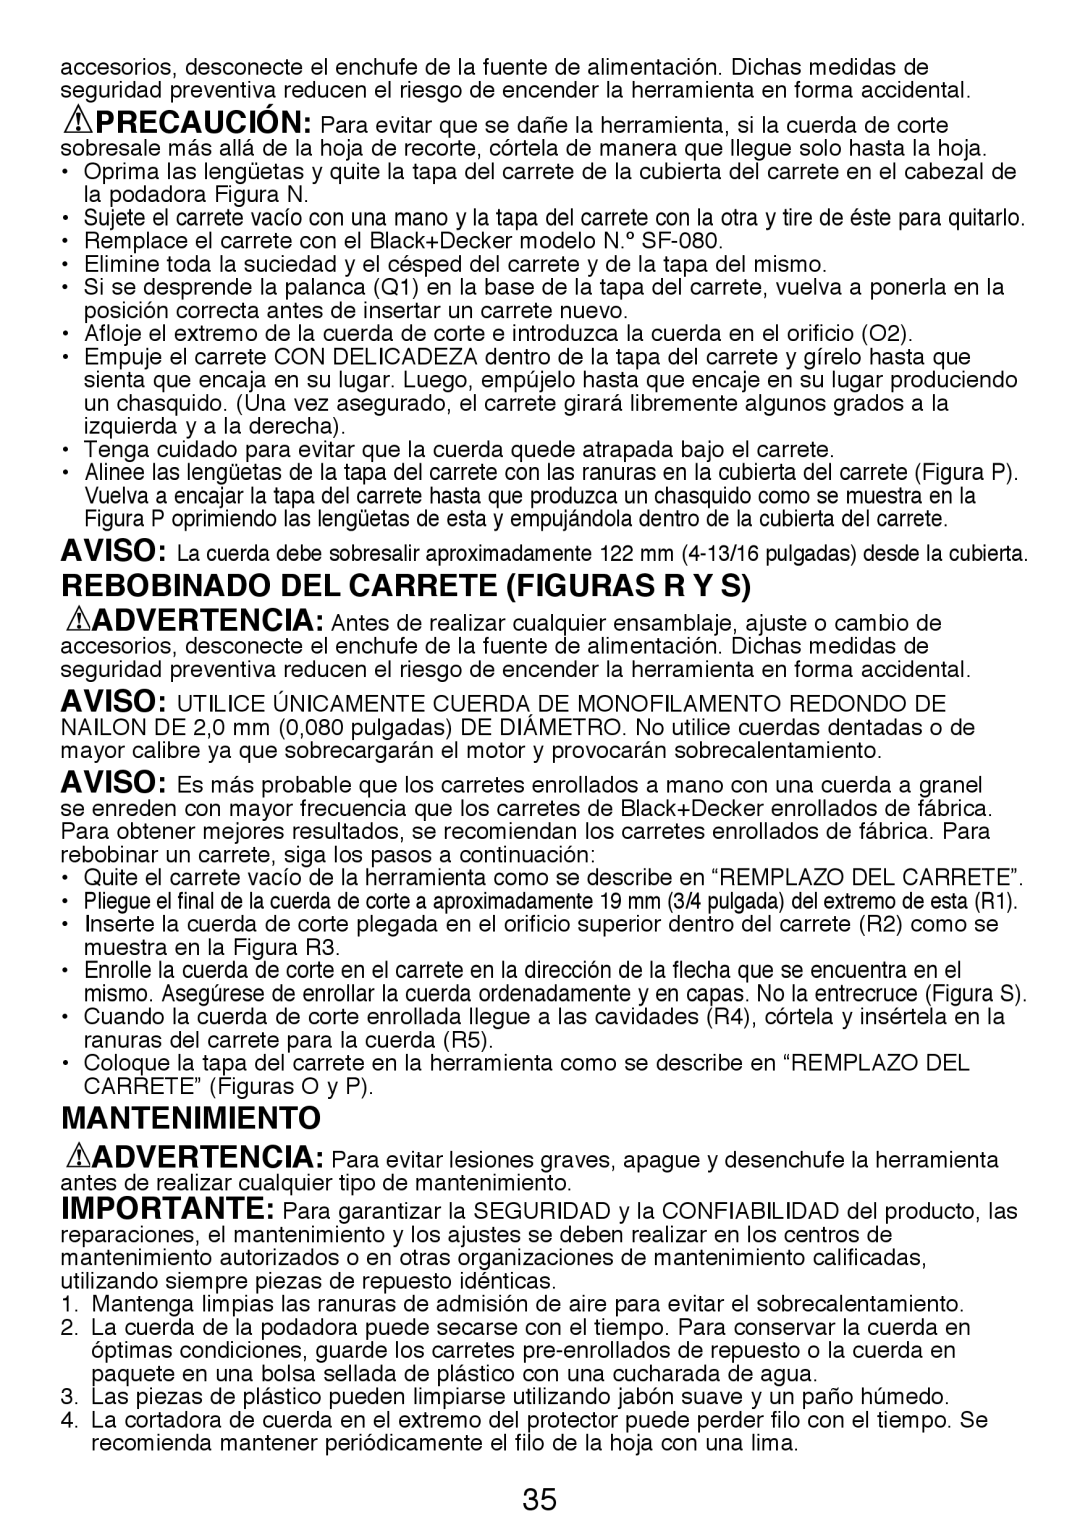 Black & Decker GH3000R instruction manual REBOBINADO DEL CARRETE figurAs R Y S, mantenimiento 